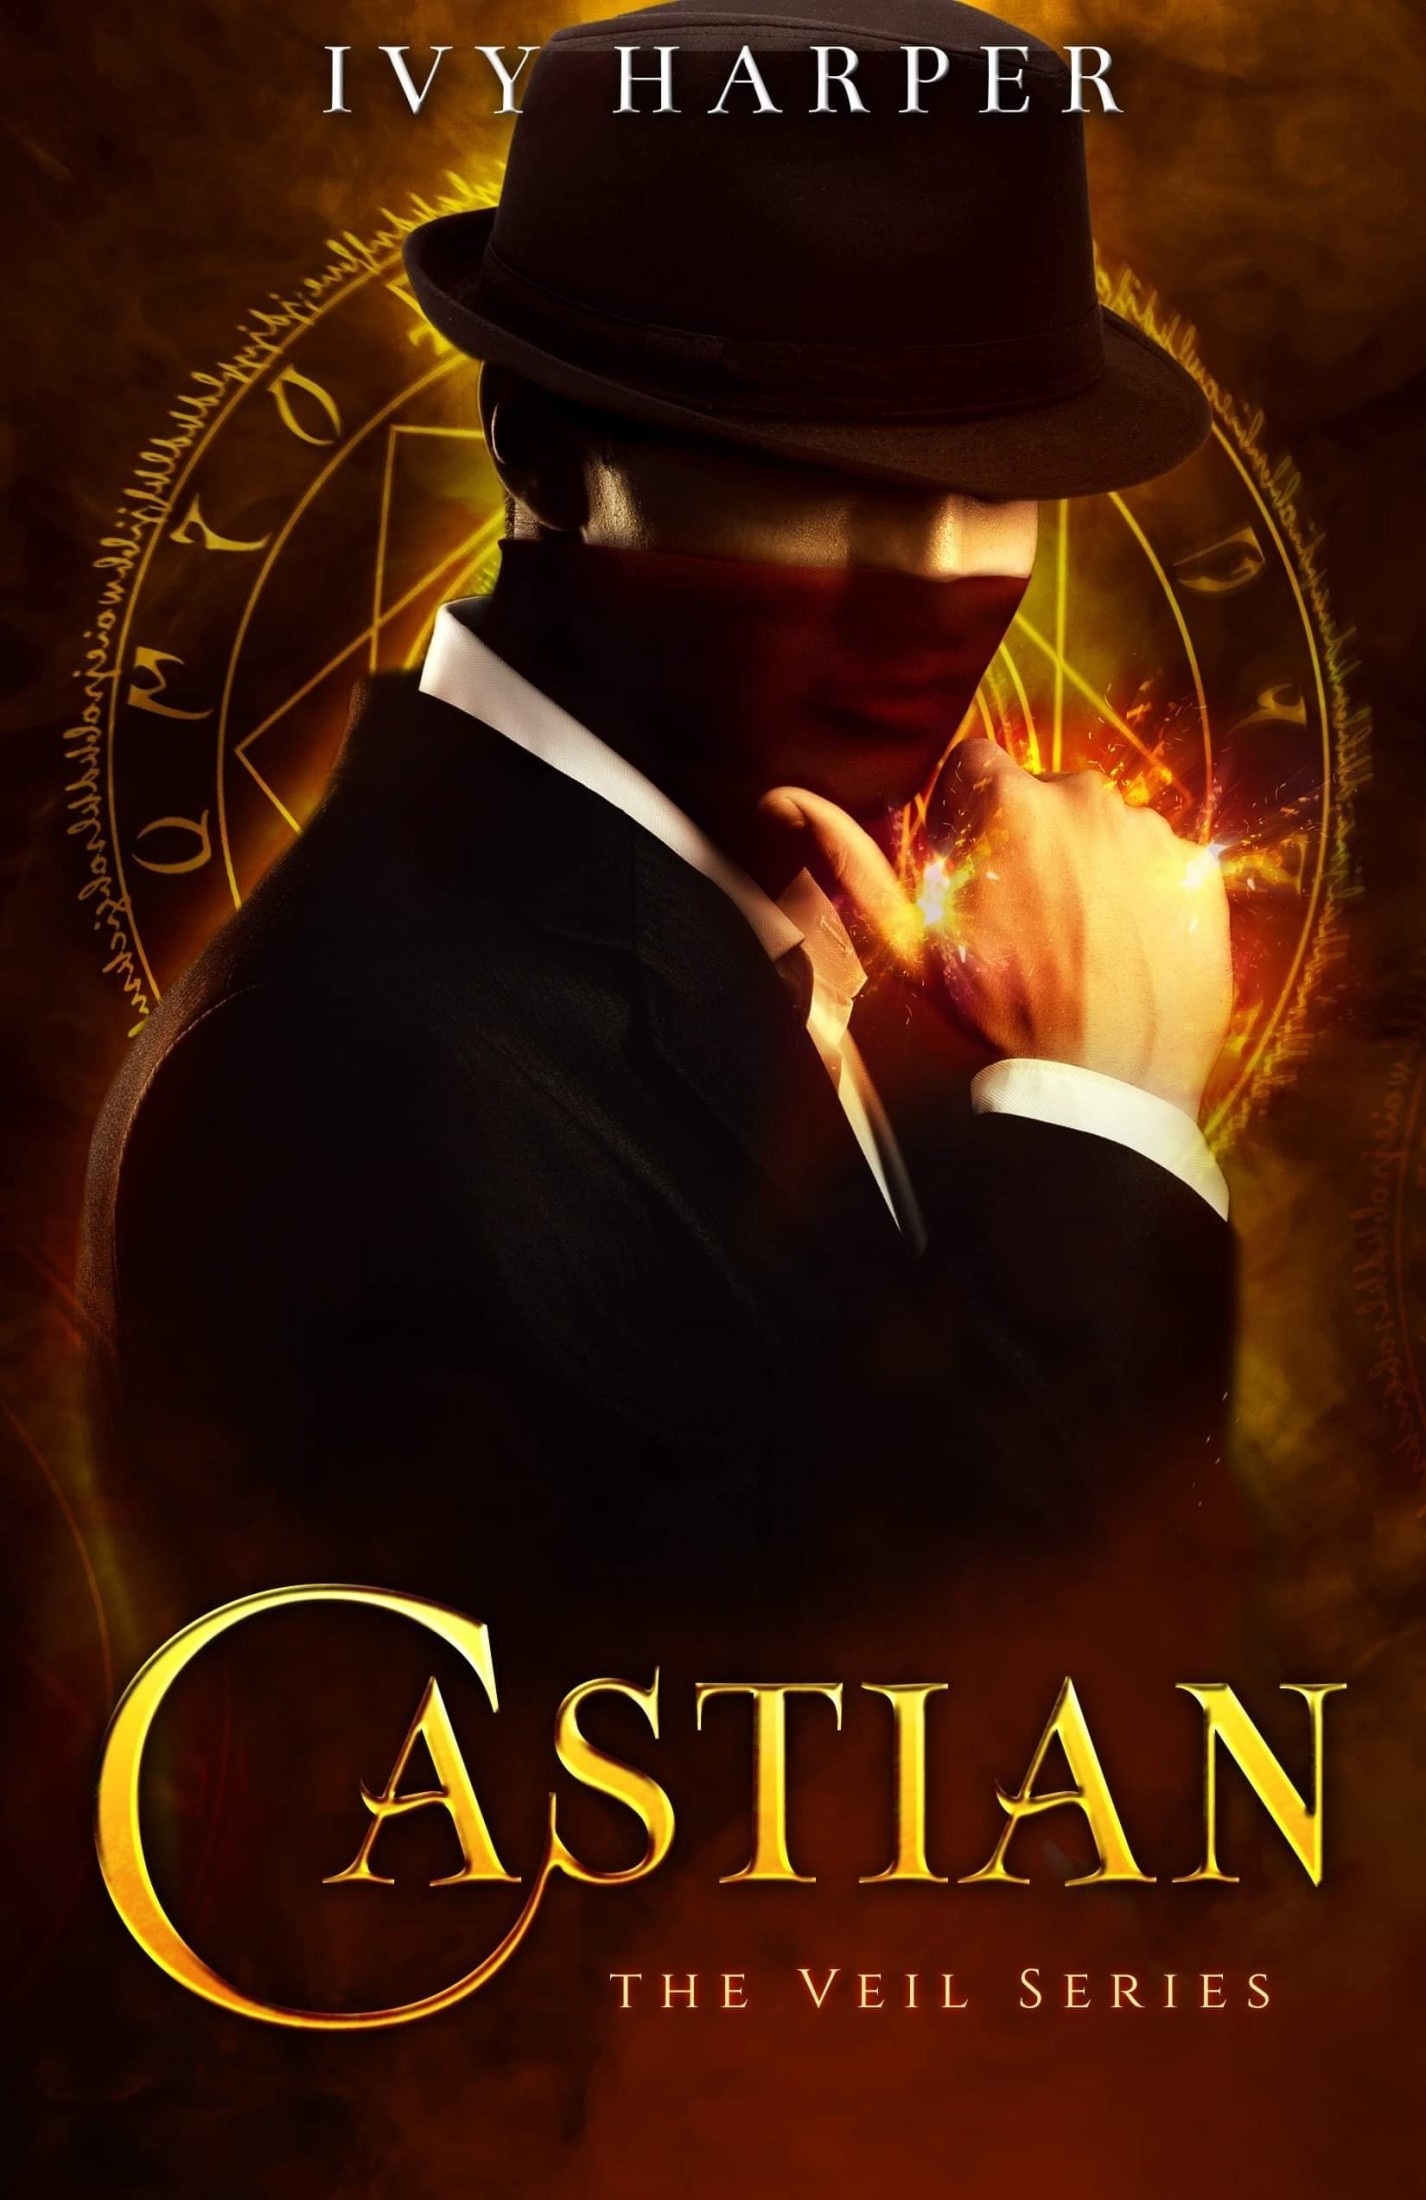 Castian: The Veil Series